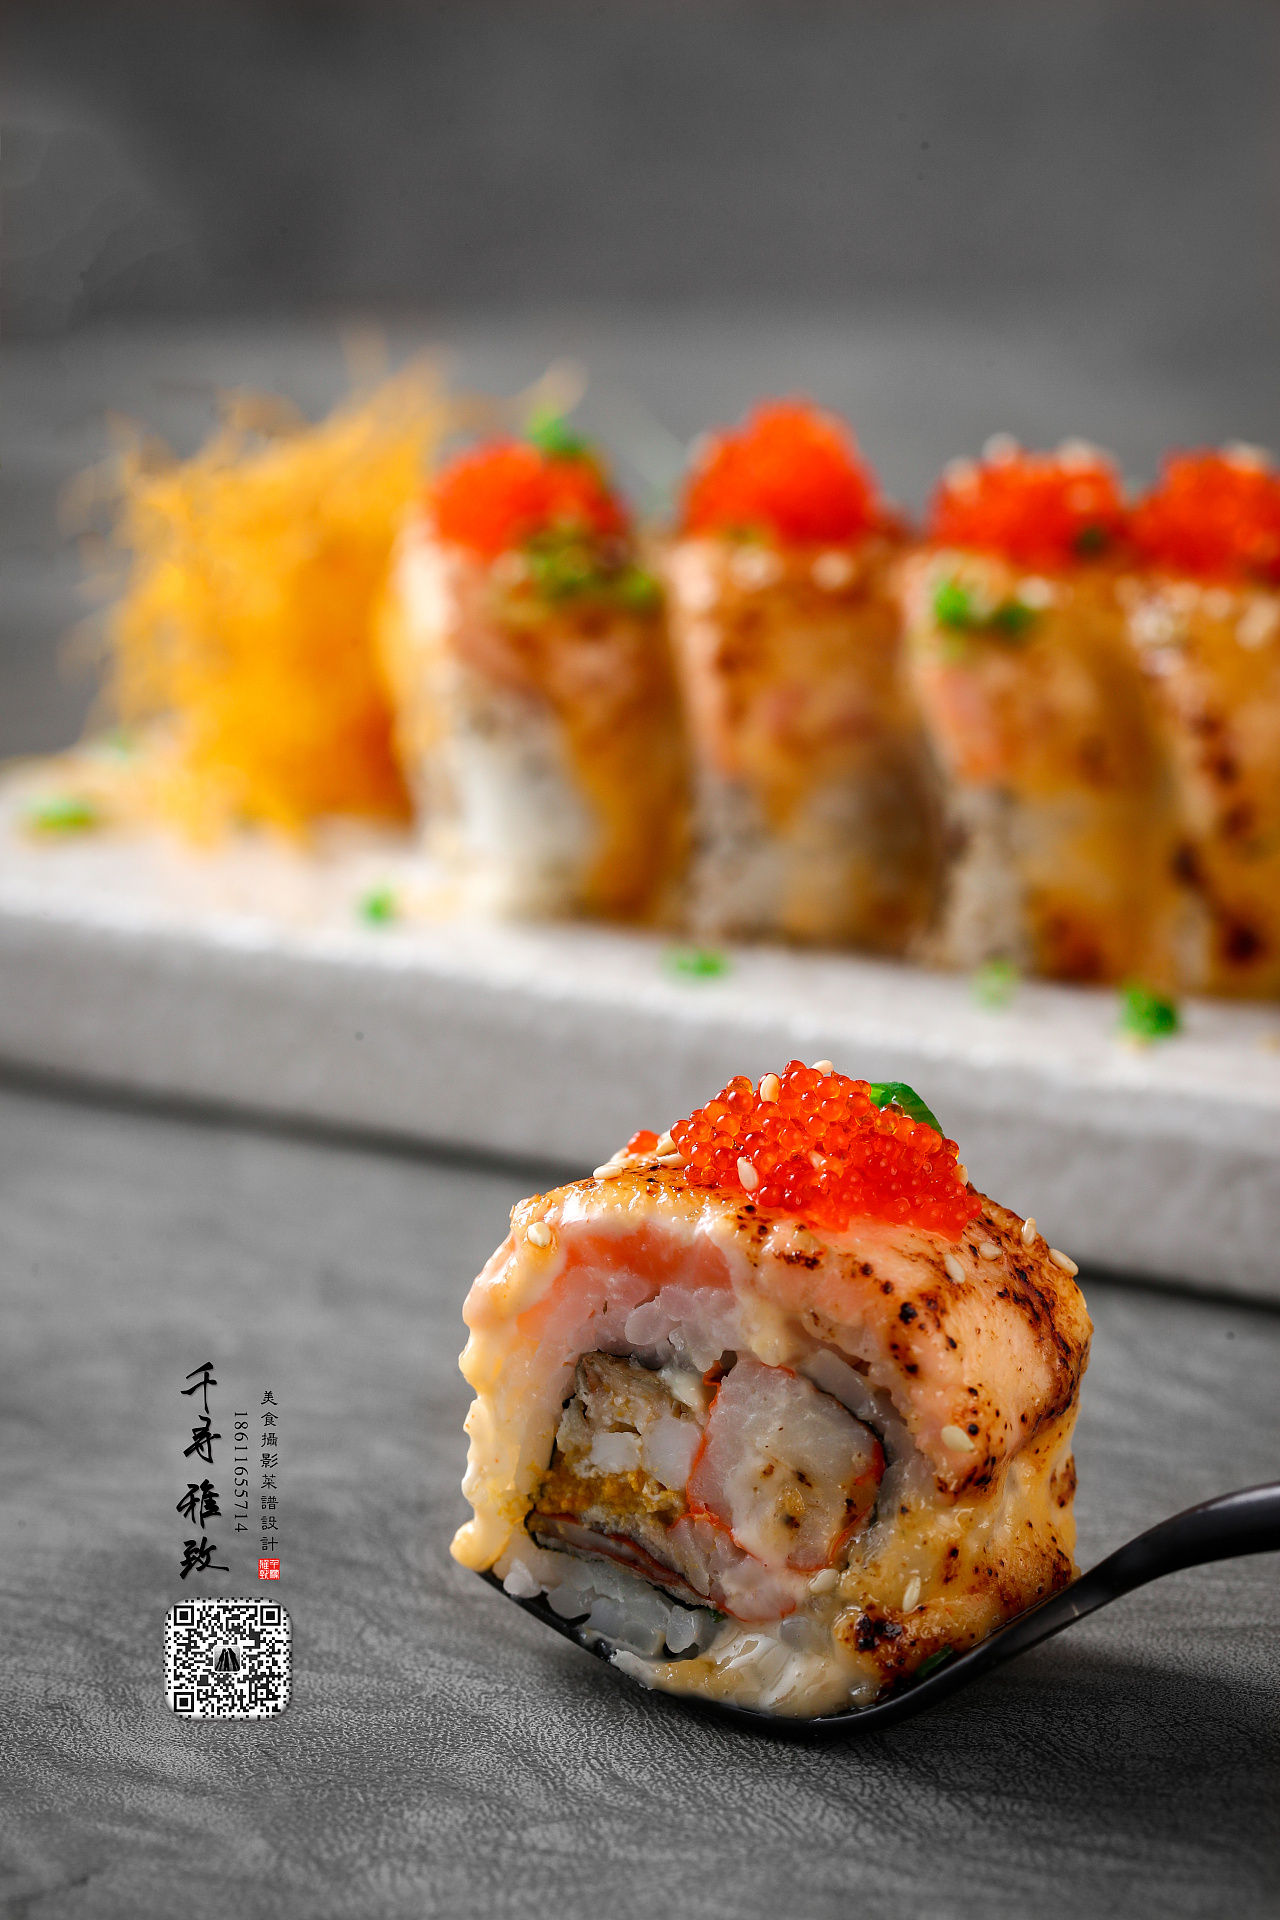 美食摄影 菜品拍摄 菜谱设计 千寻雅致 日本料理 寿司